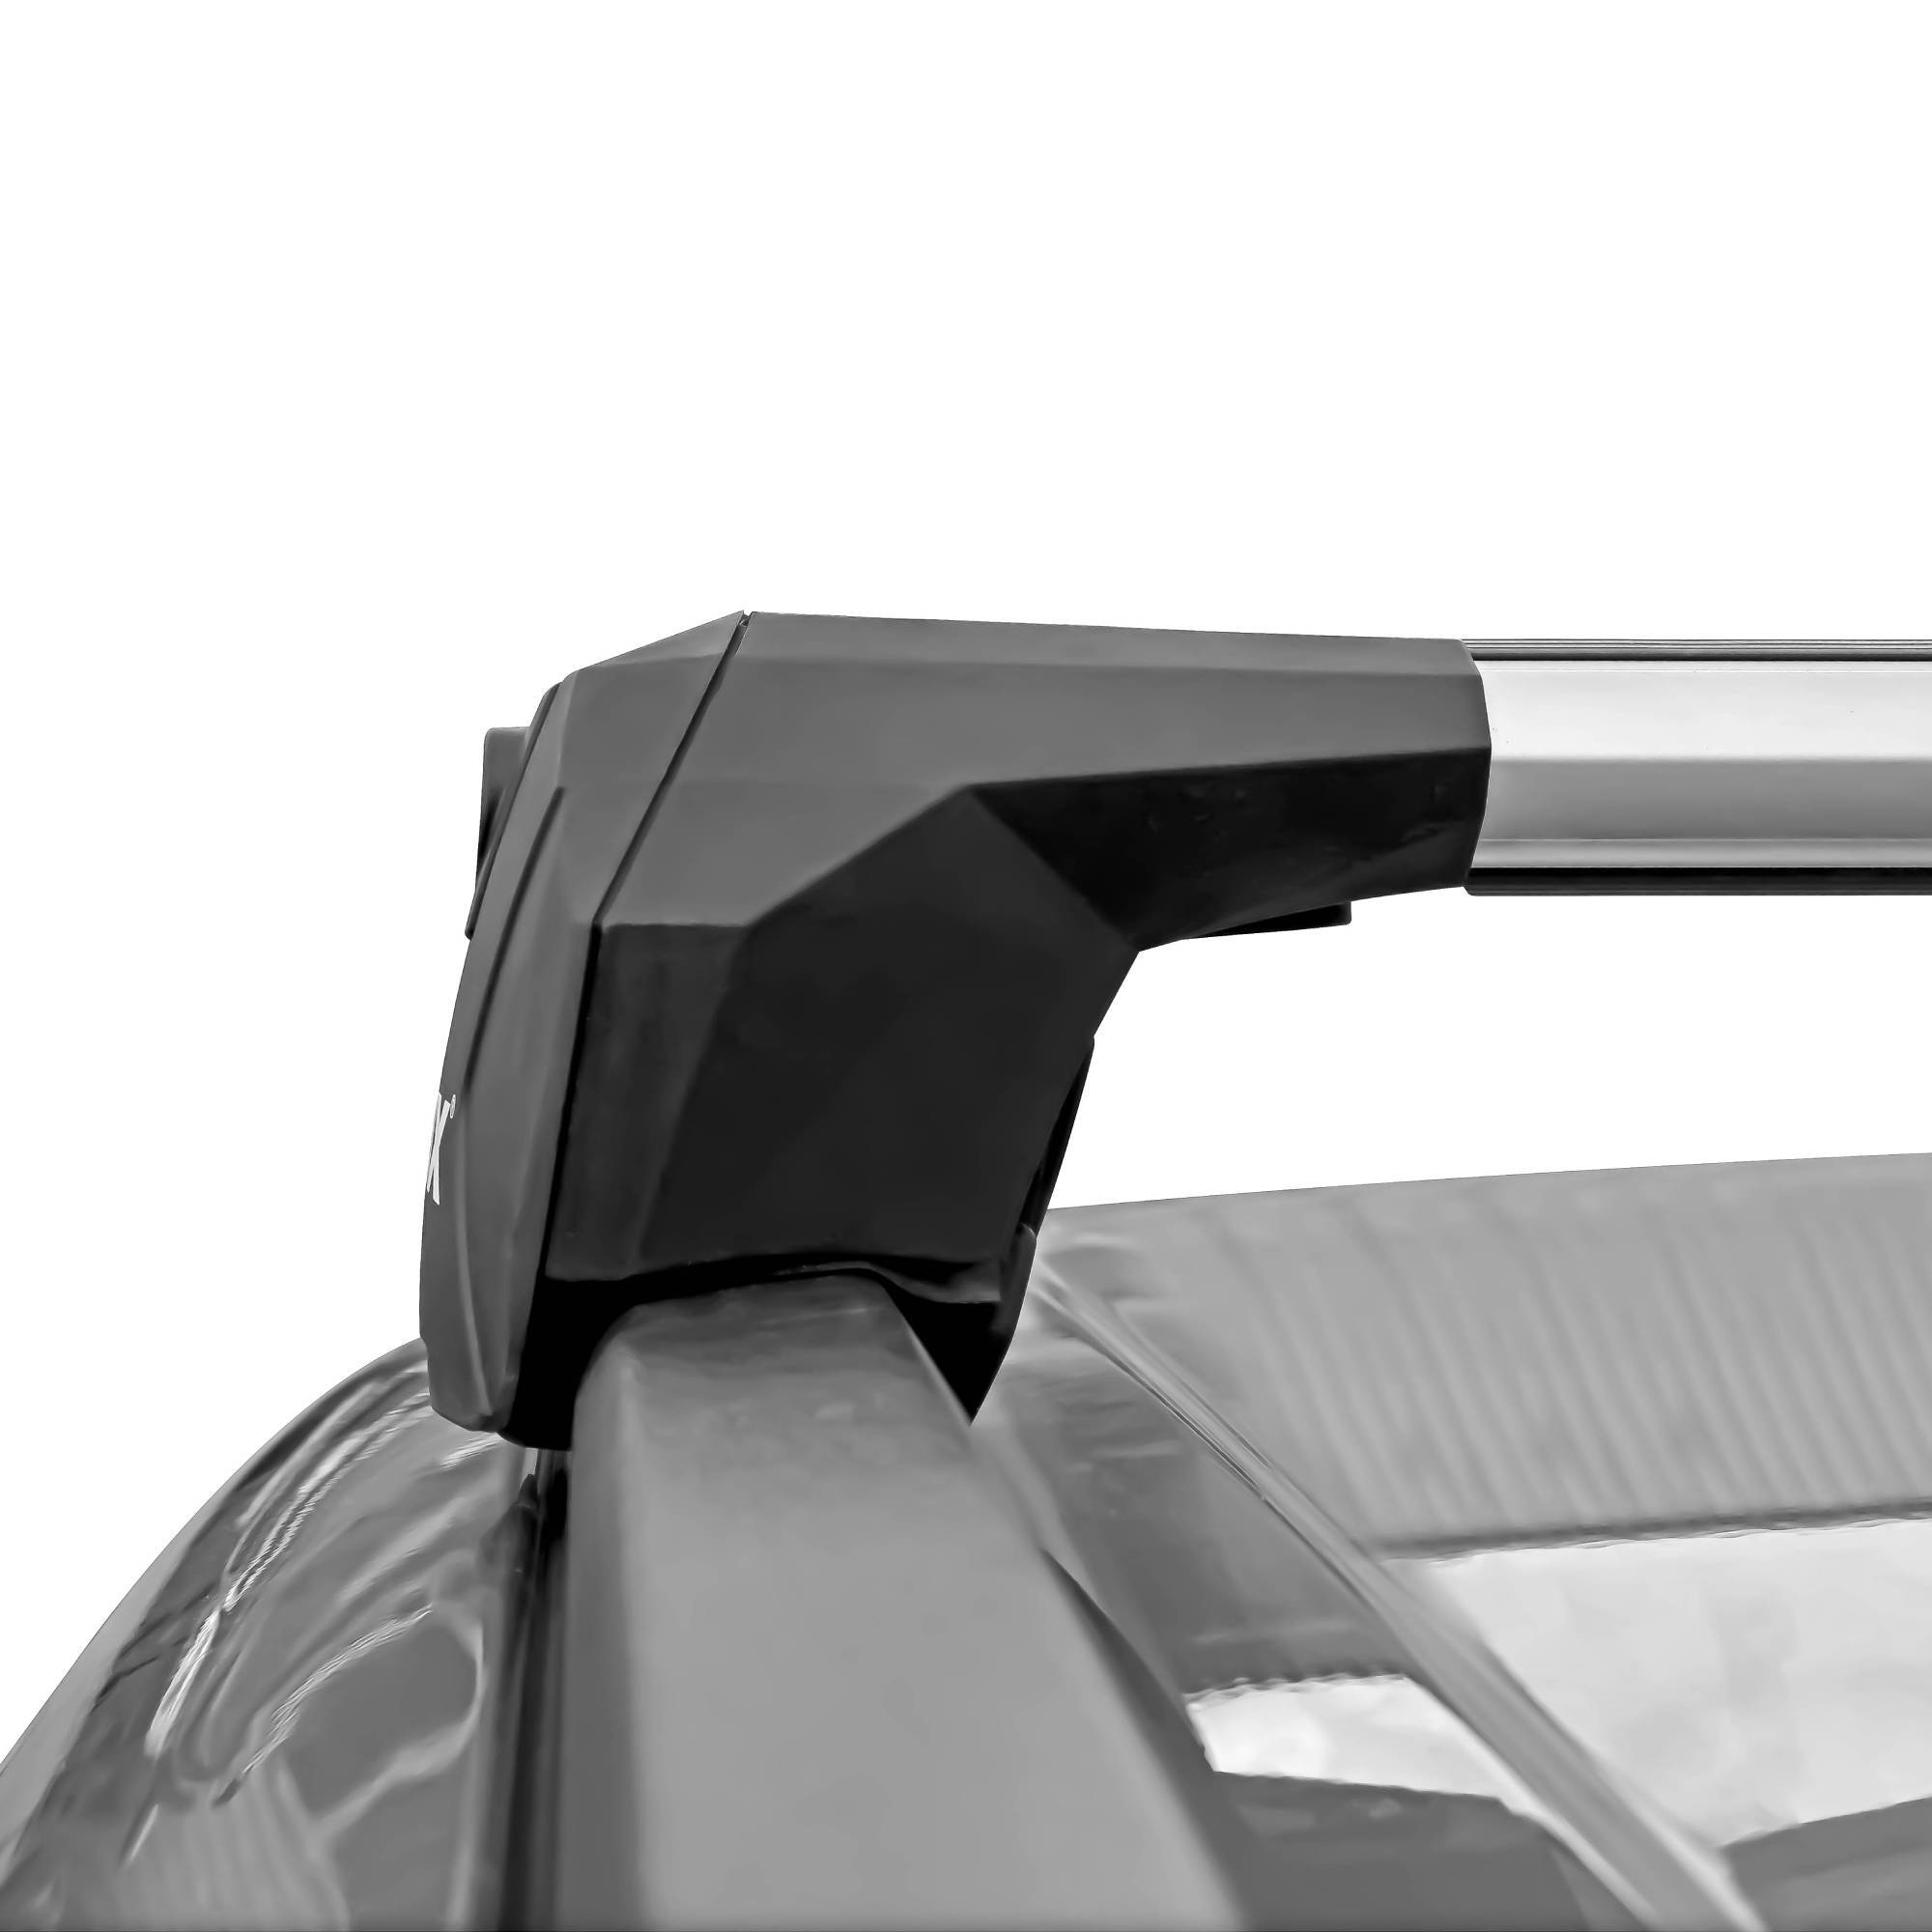 Багажная система "LUX" SCOUT, для а/м с интег. рейлингами, дуги 110 мм, серебр.